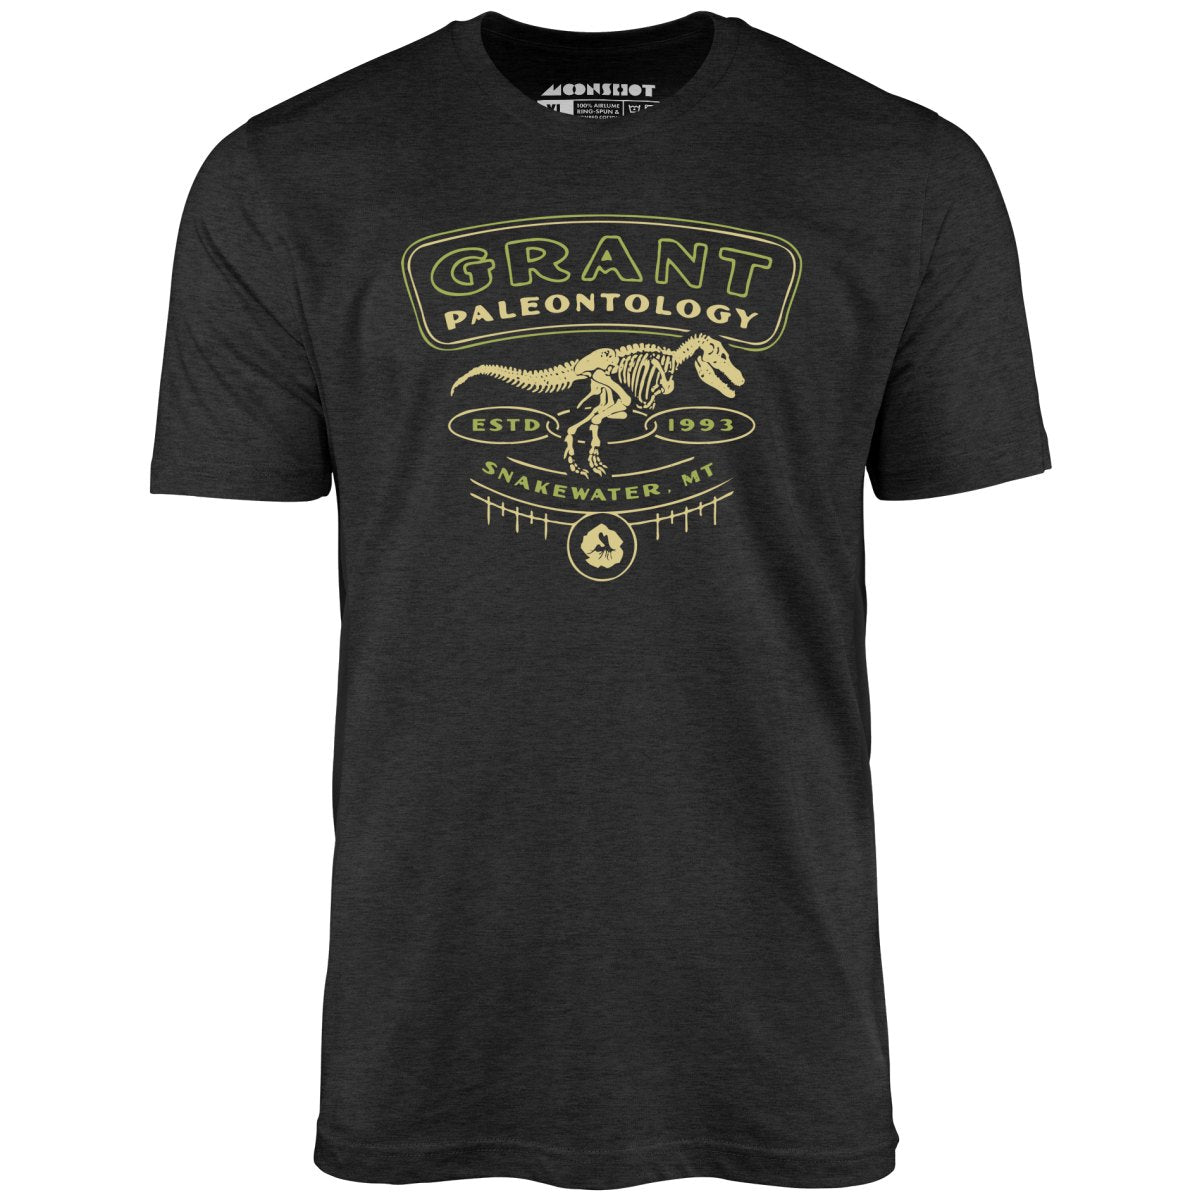 Grant Paleontology - Unisex T-Shirt